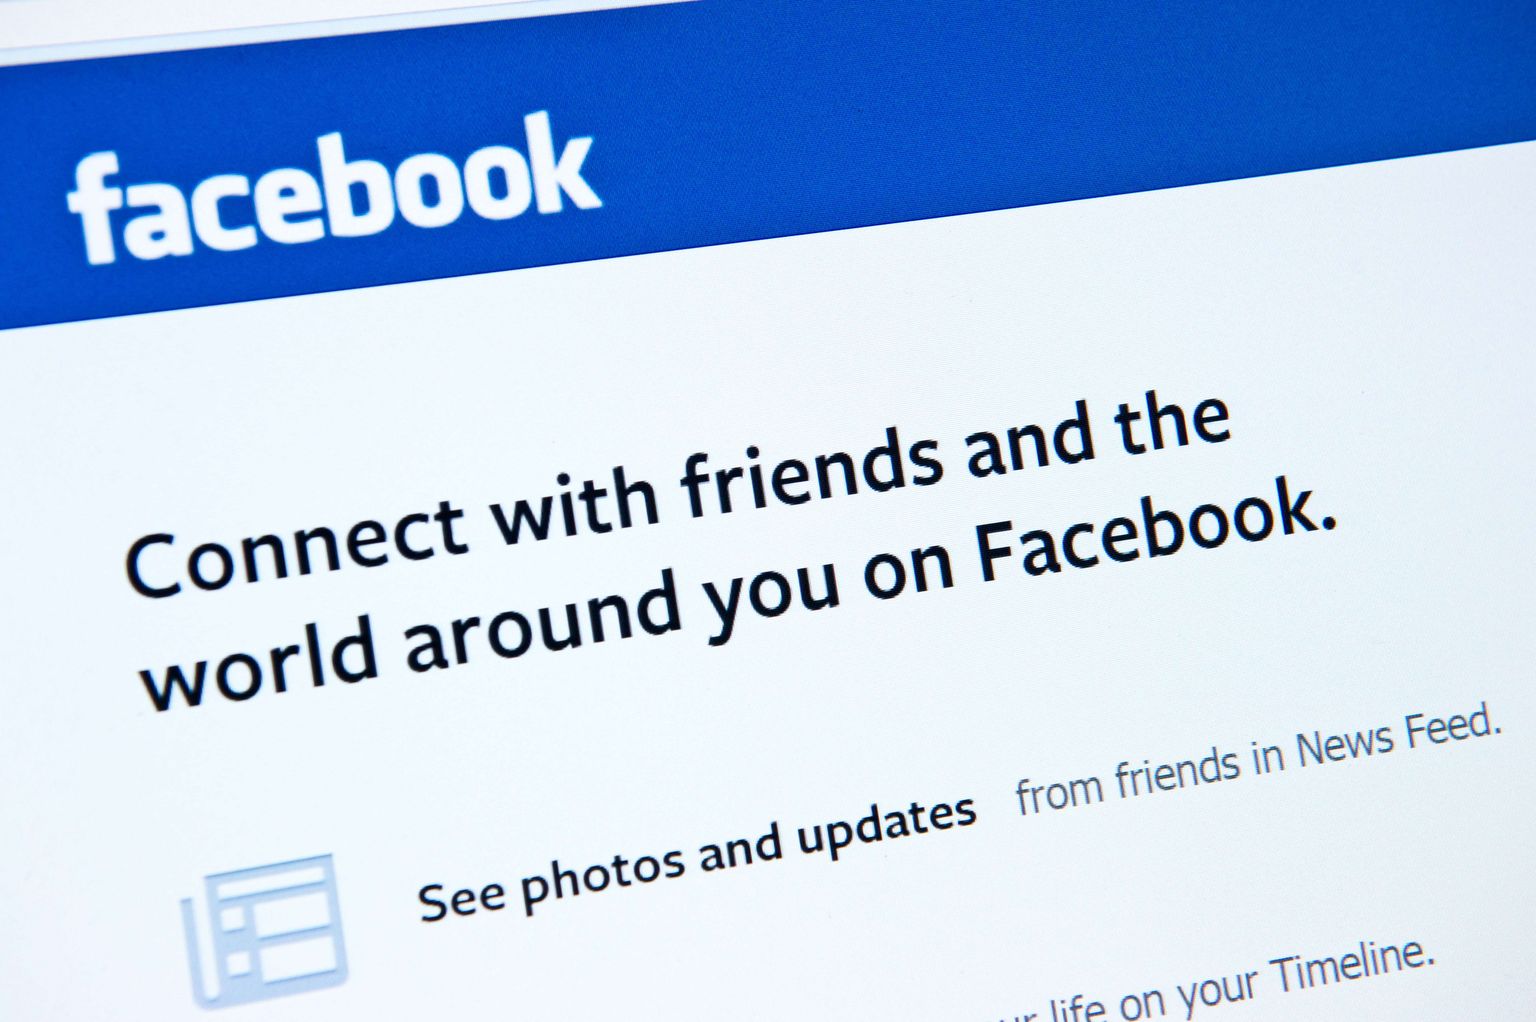 Tasuta turundamise aeg Facebookis on möödas.